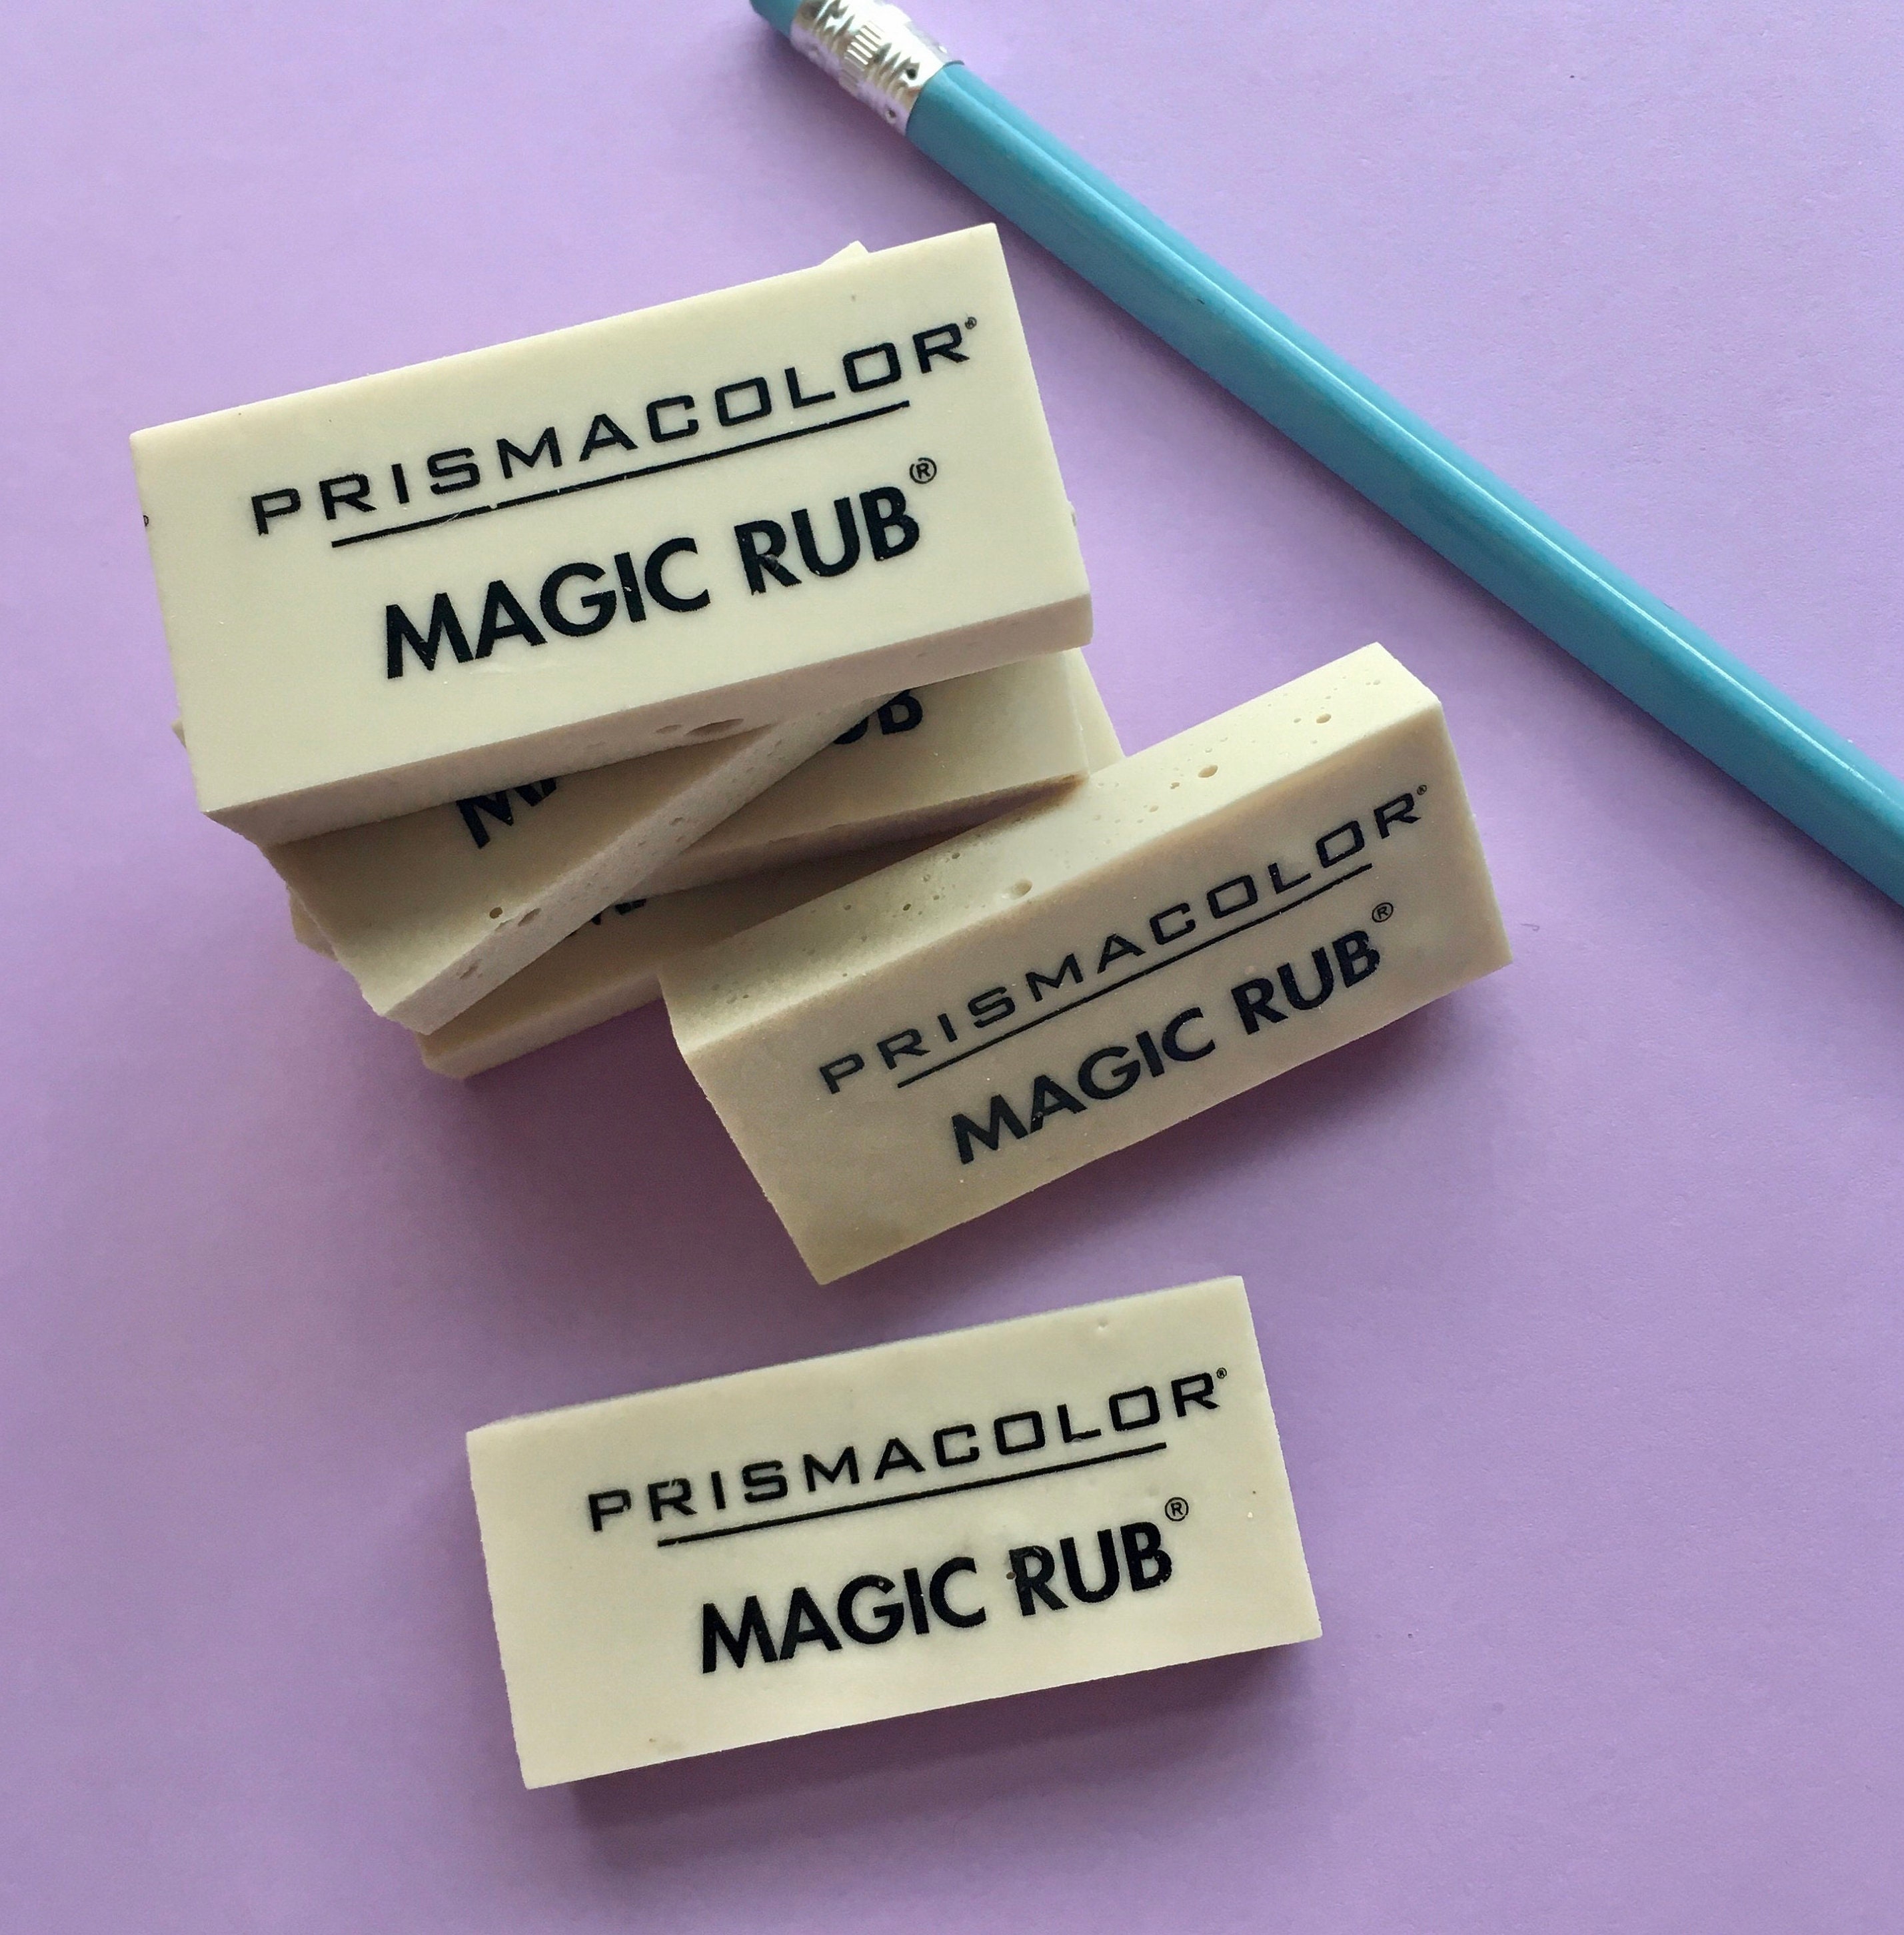 Prismacolor Magic Rub Eraser - Premium Latex Free Vinyl Eraser